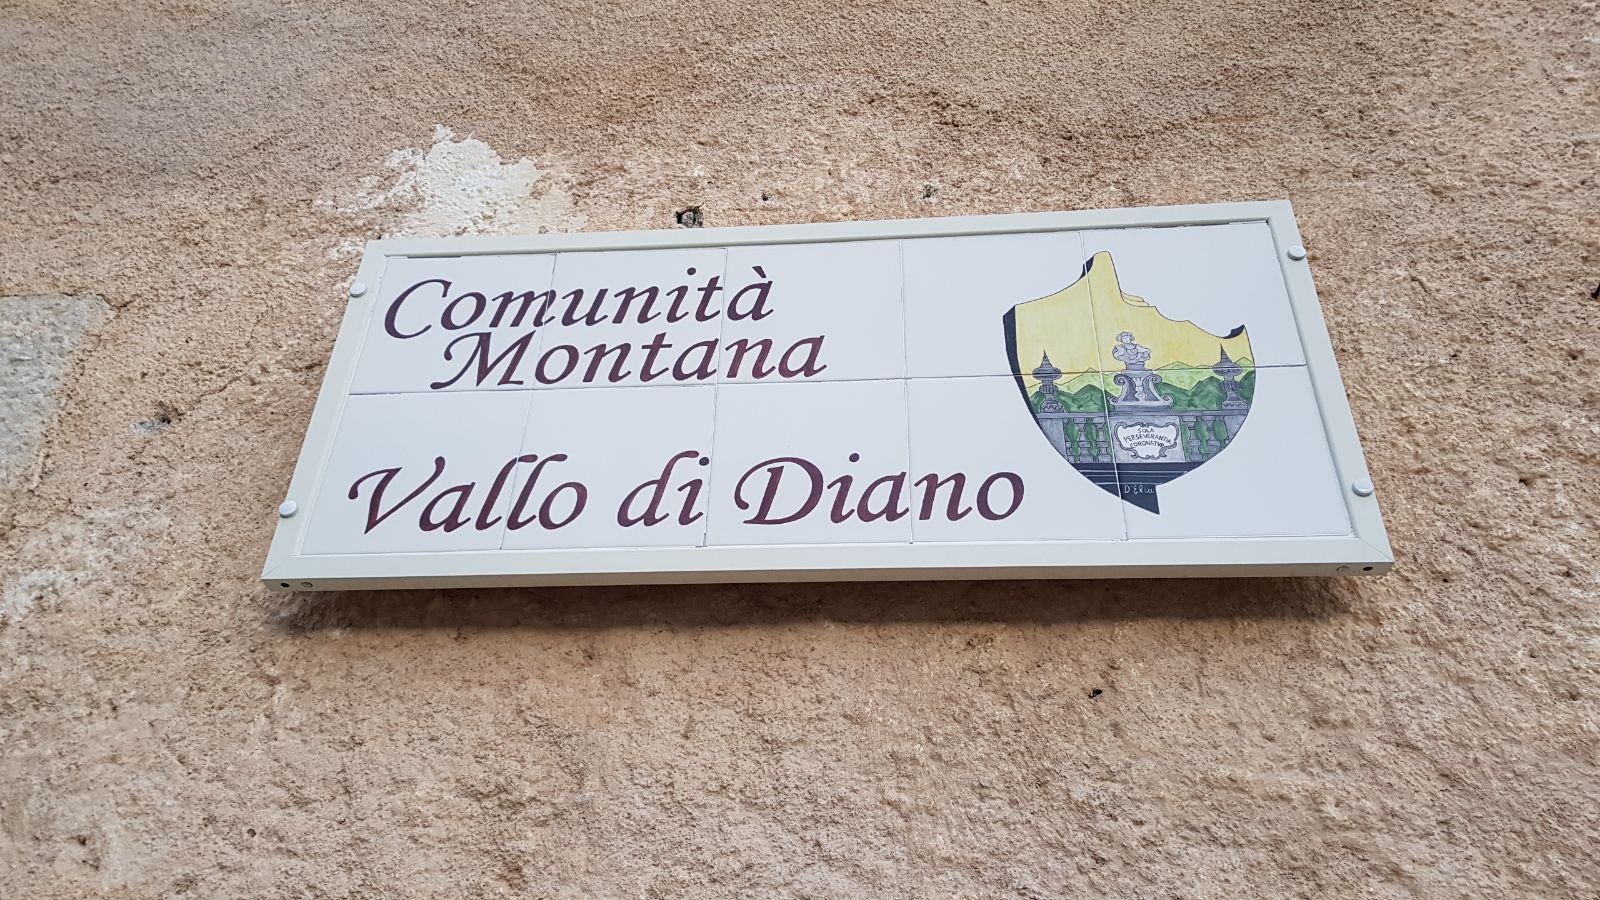 Incarichi a parenti: perquisizioni nella sede della comunità montana del Vallo di Diano